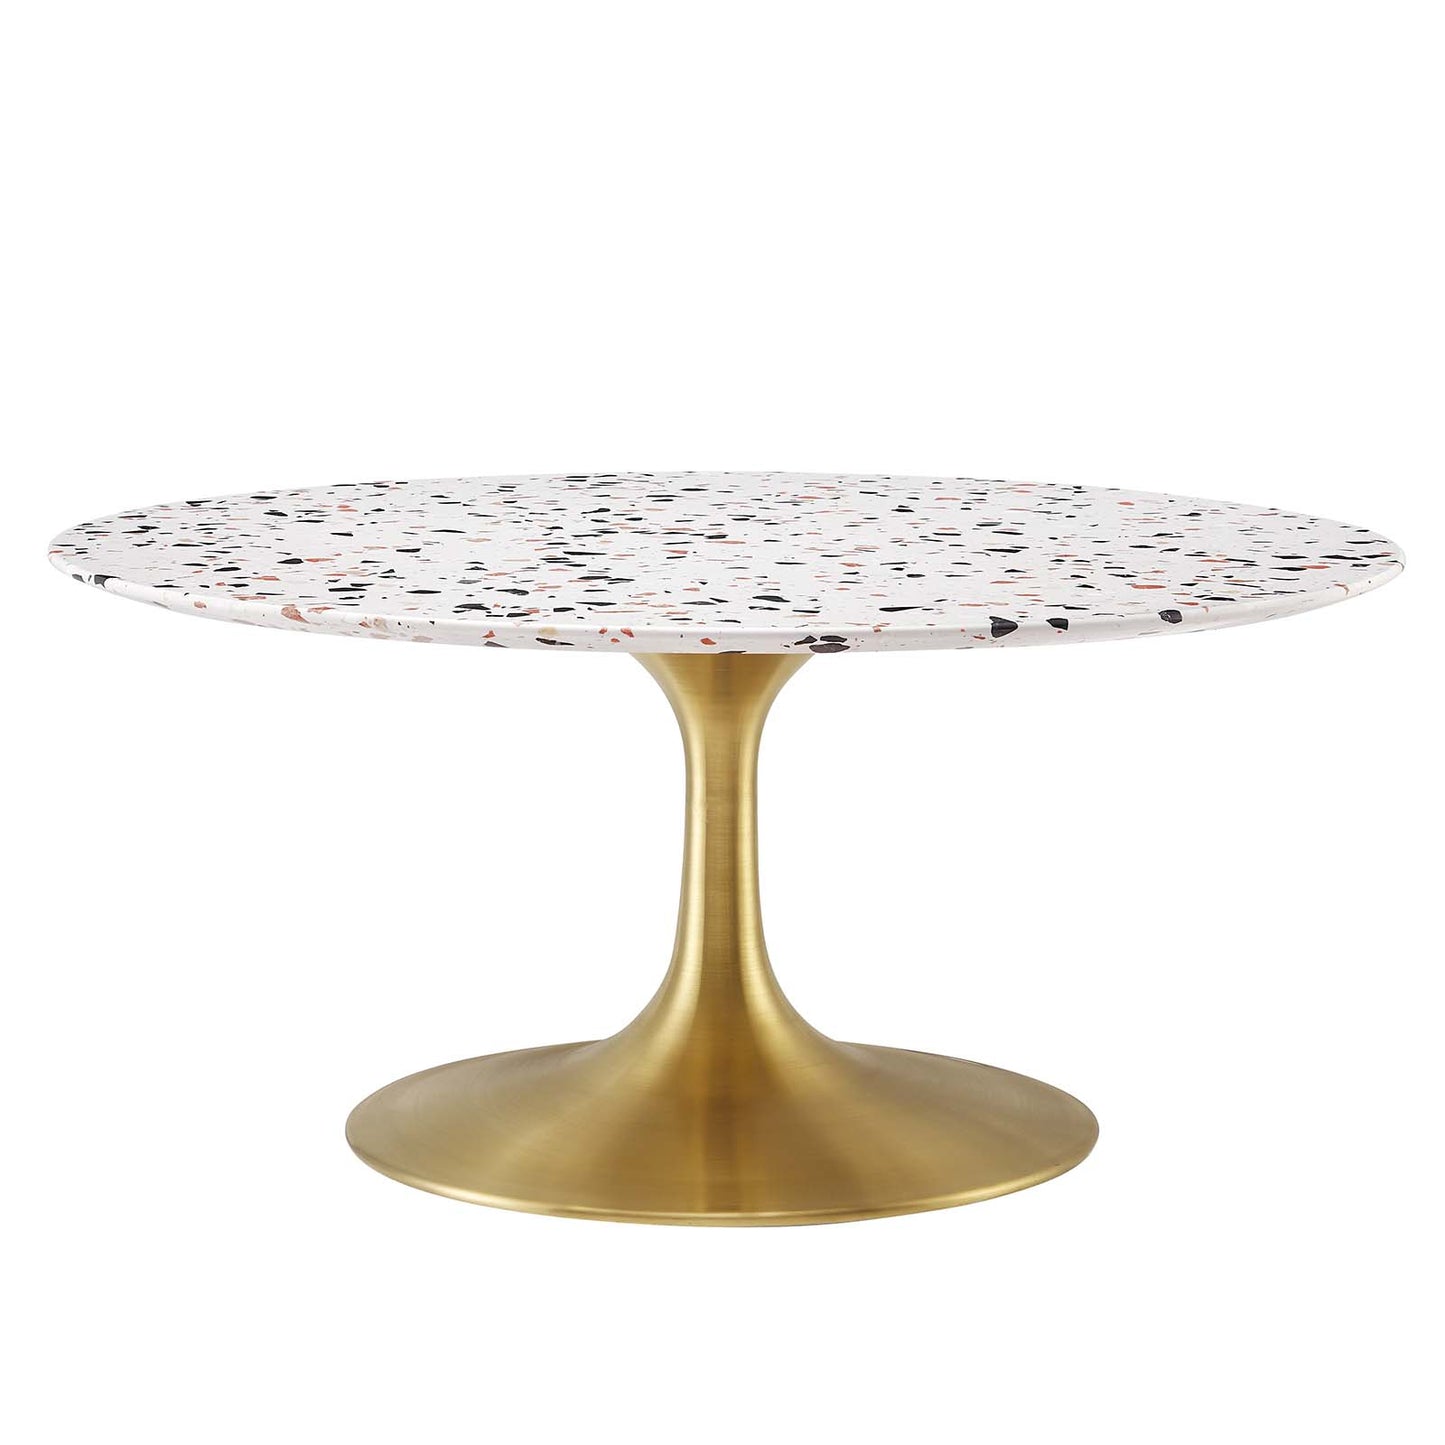 Lippa 36" Round Terrazzo Coffee Table Gold White EEI-5720-GLD-WHI